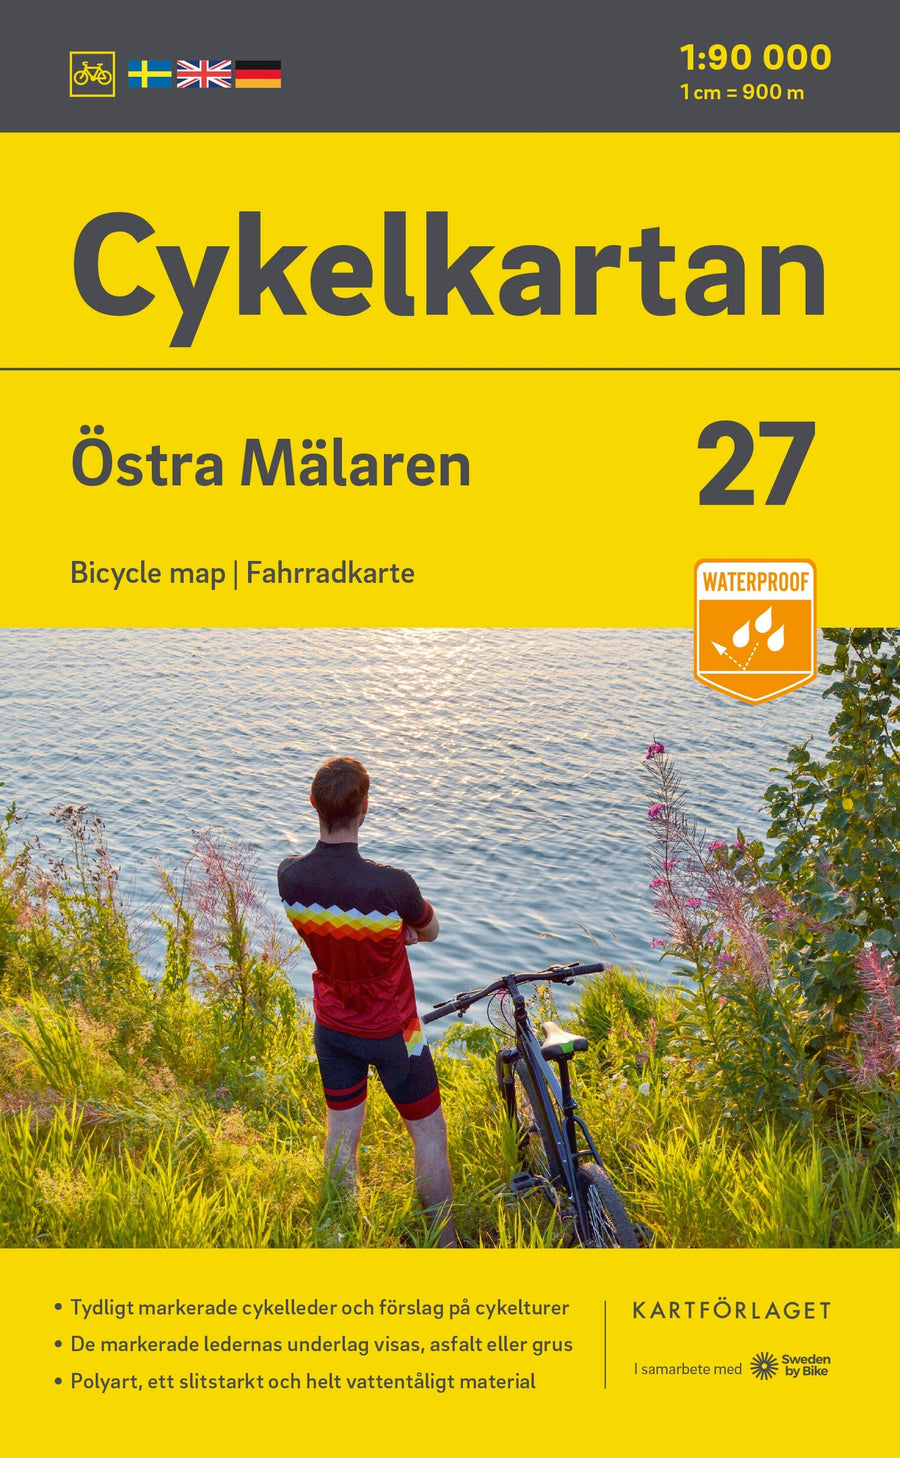 Carte cycliste n° 27 - Mälaren Est (Suède) | Norstedts carte pliée Norstedts 